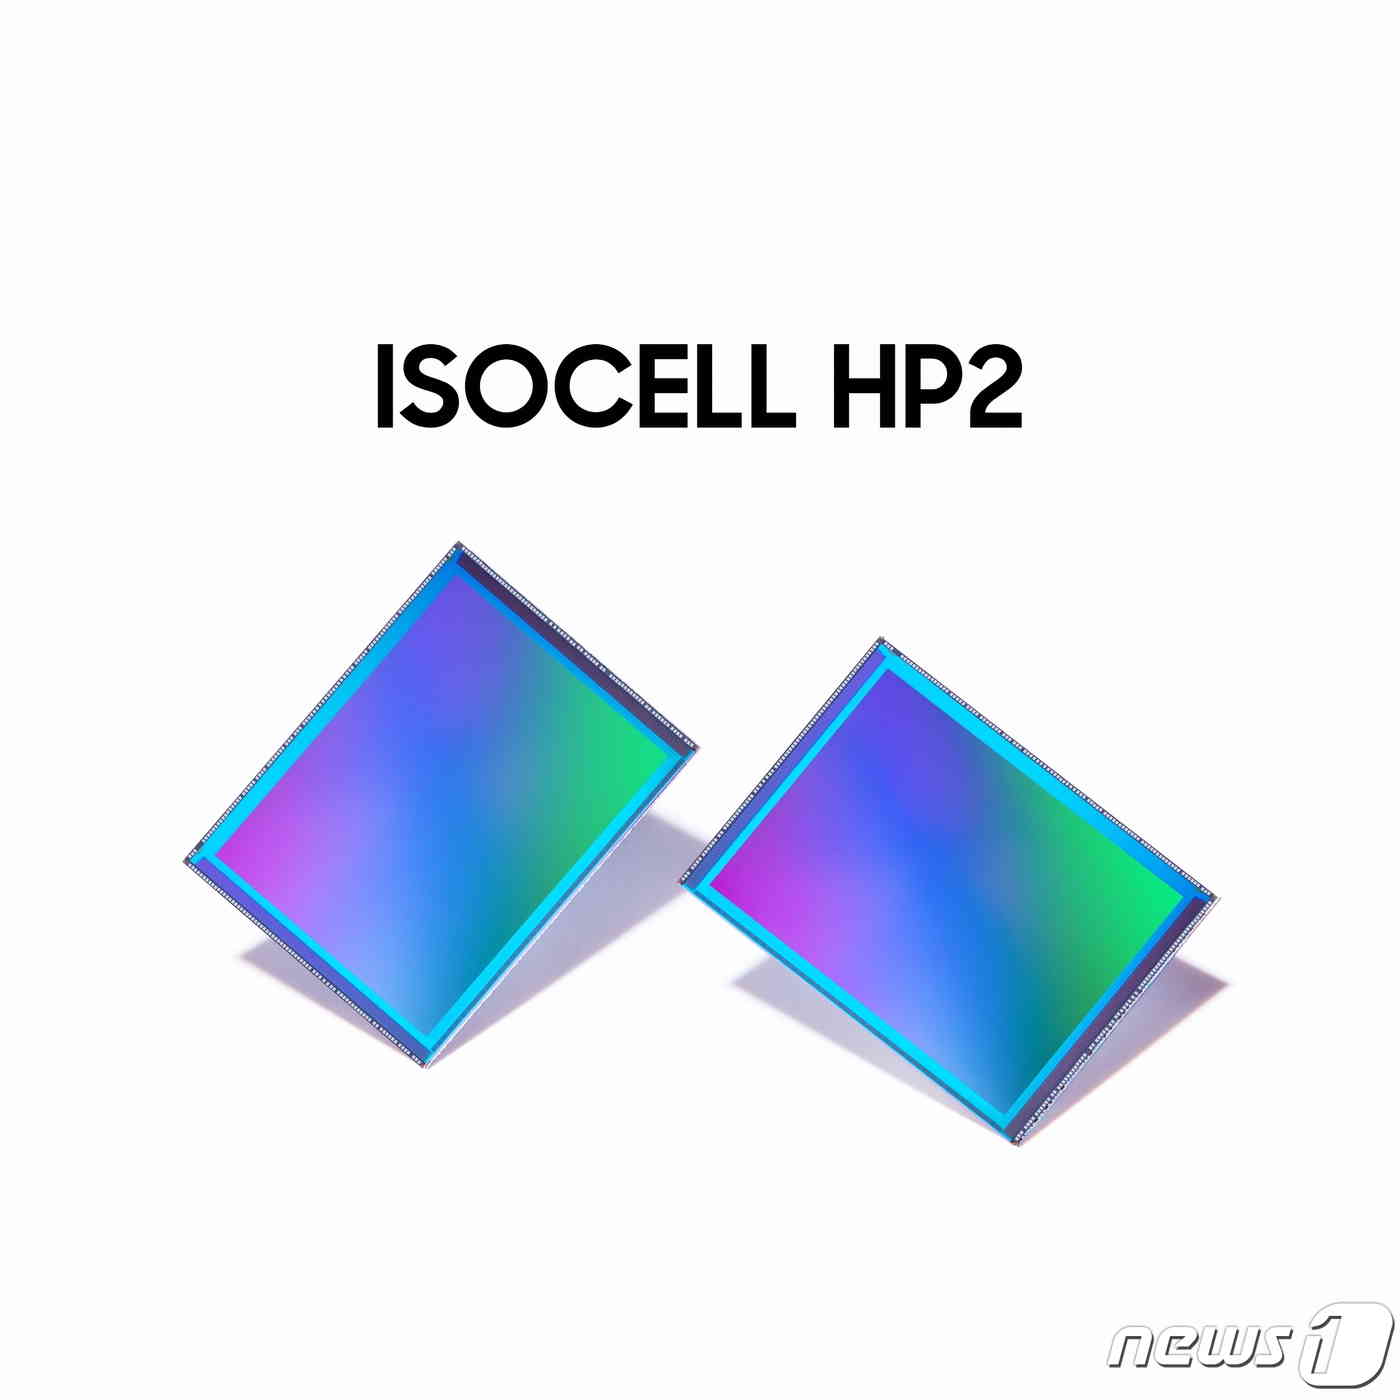 삼성전자가 0.6㎛(마이크로미터) 크기의 픽셀 2억개를 탑재한 이미지센서 '아이소셀(ISOCELL) HP2'를 출시했다고 17일 밝혔다. 이 제품은 최신 초고화소 센서 기술을 집약한 제품으로, 언제 어디서든 밝고 선명한 이미지 촬영을 지원한다. (삼성전자 제공) 2023.1.17/뉴스1